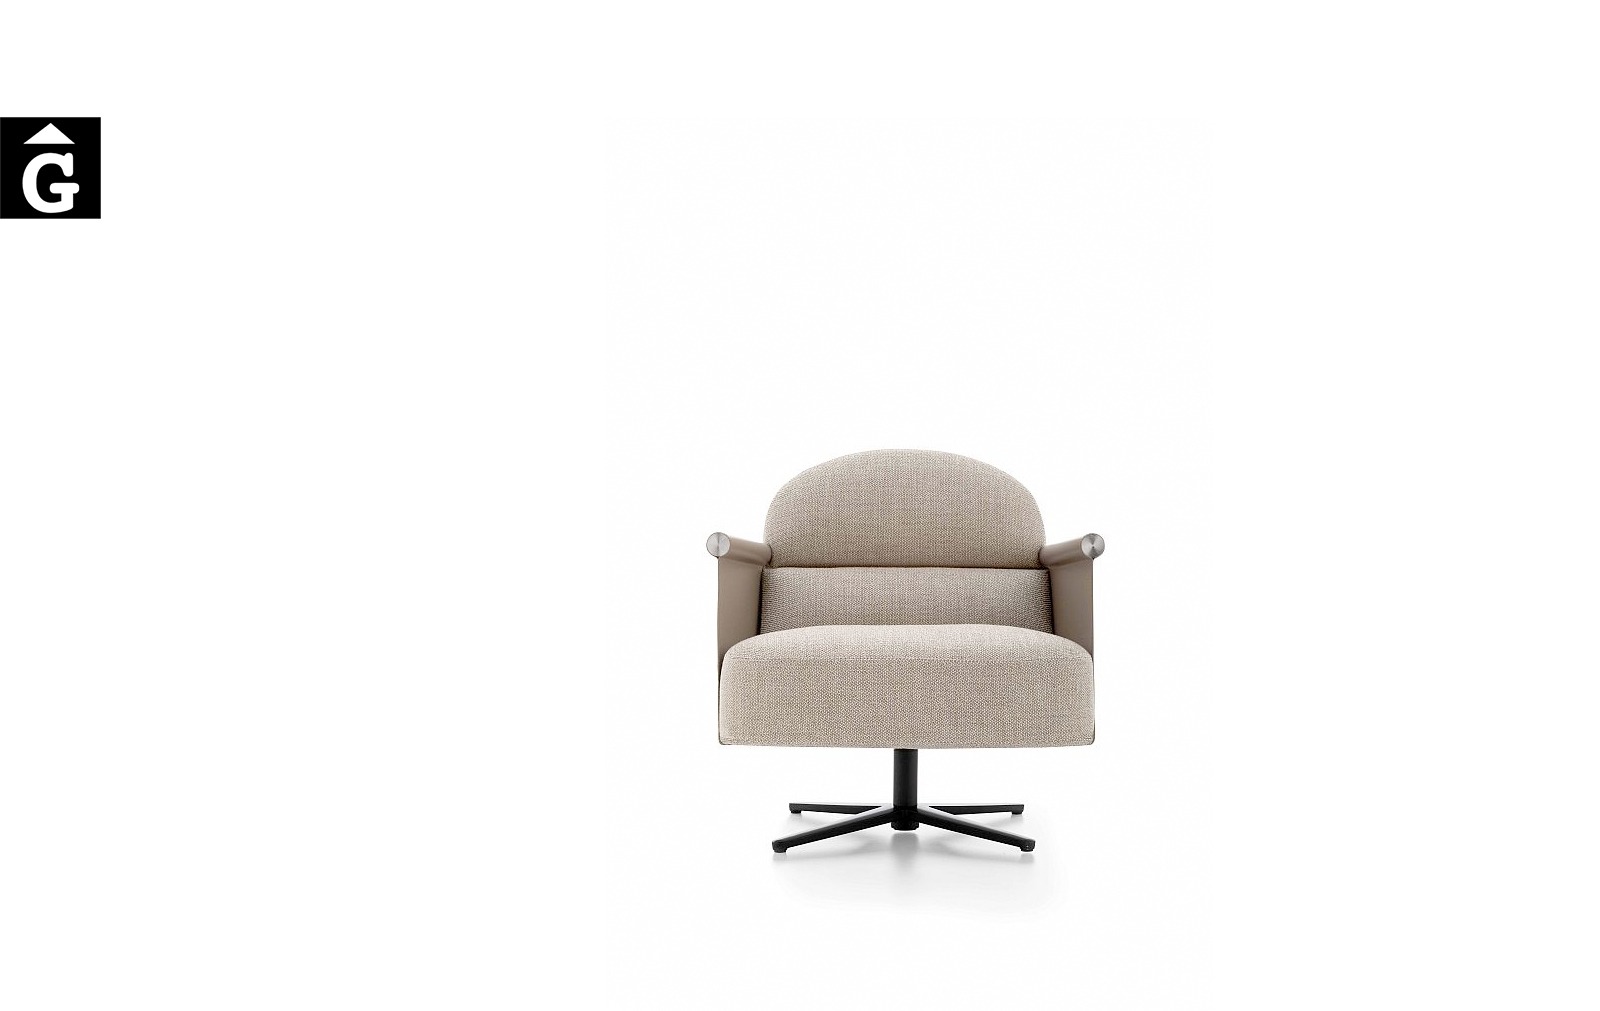 Butaca Beyl alta molt acollidora i elegant – Ditre Italia Sofas disseny i qualitat alta by mobles Gifreu